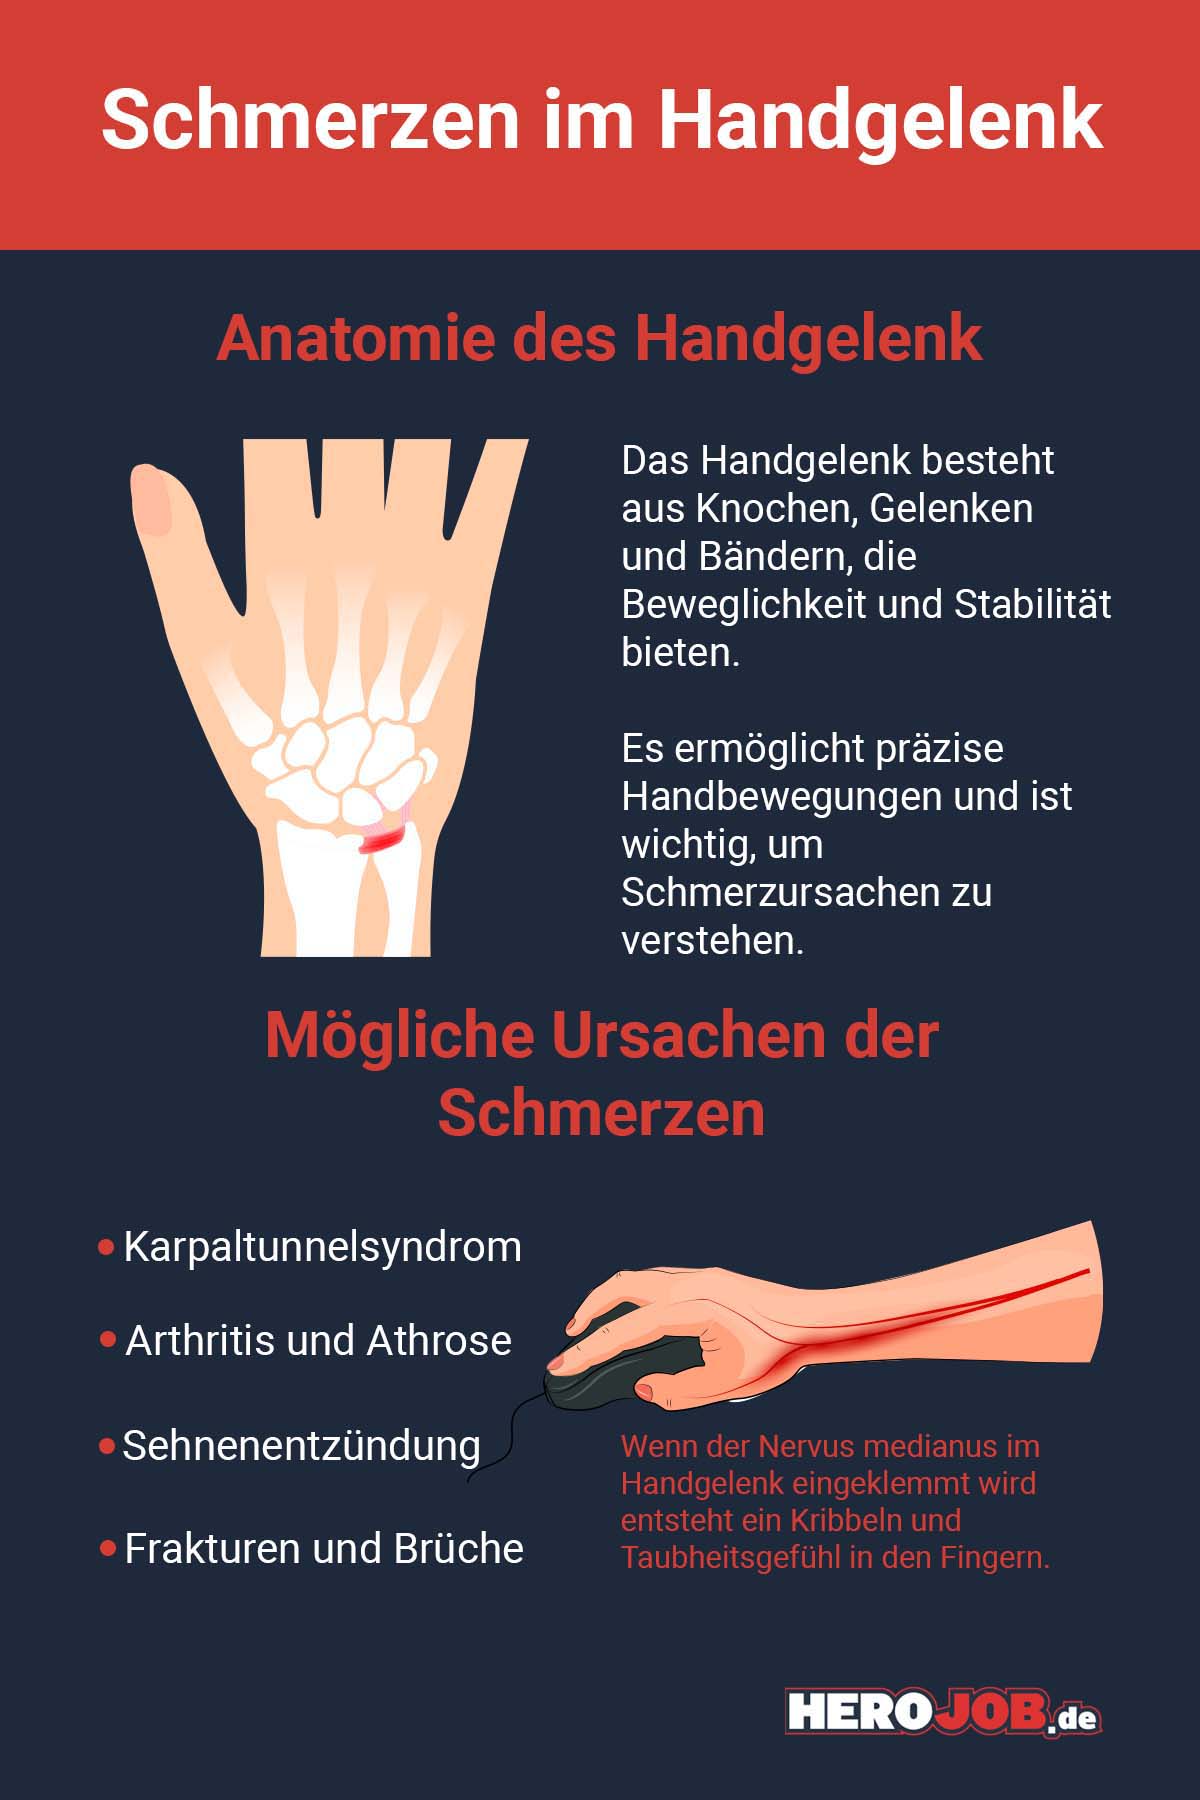 Anatomie des Handgelenk Das Handgelenk besteht aus Knochen, Gelenken und Bändern, die Beweglichkeit und Stabilität bieten. Es ermöglicht präzise Handbewegungen und ist wichtig, um Schmerzursachen zu verstehen. Mögliche Ursachen der Schmerzen * Karpaltunnelsyndrom * ﻿﻿Arthritis und Athrose * ﻿﻿Sehnenentzündung * ﻿﻿Frakturen und Brüche Wenn der Nervus medianus im Handgelenk eingeklemmt wird entsteht ein Kribbeln und Taubheitsgefühl in den Fingern.